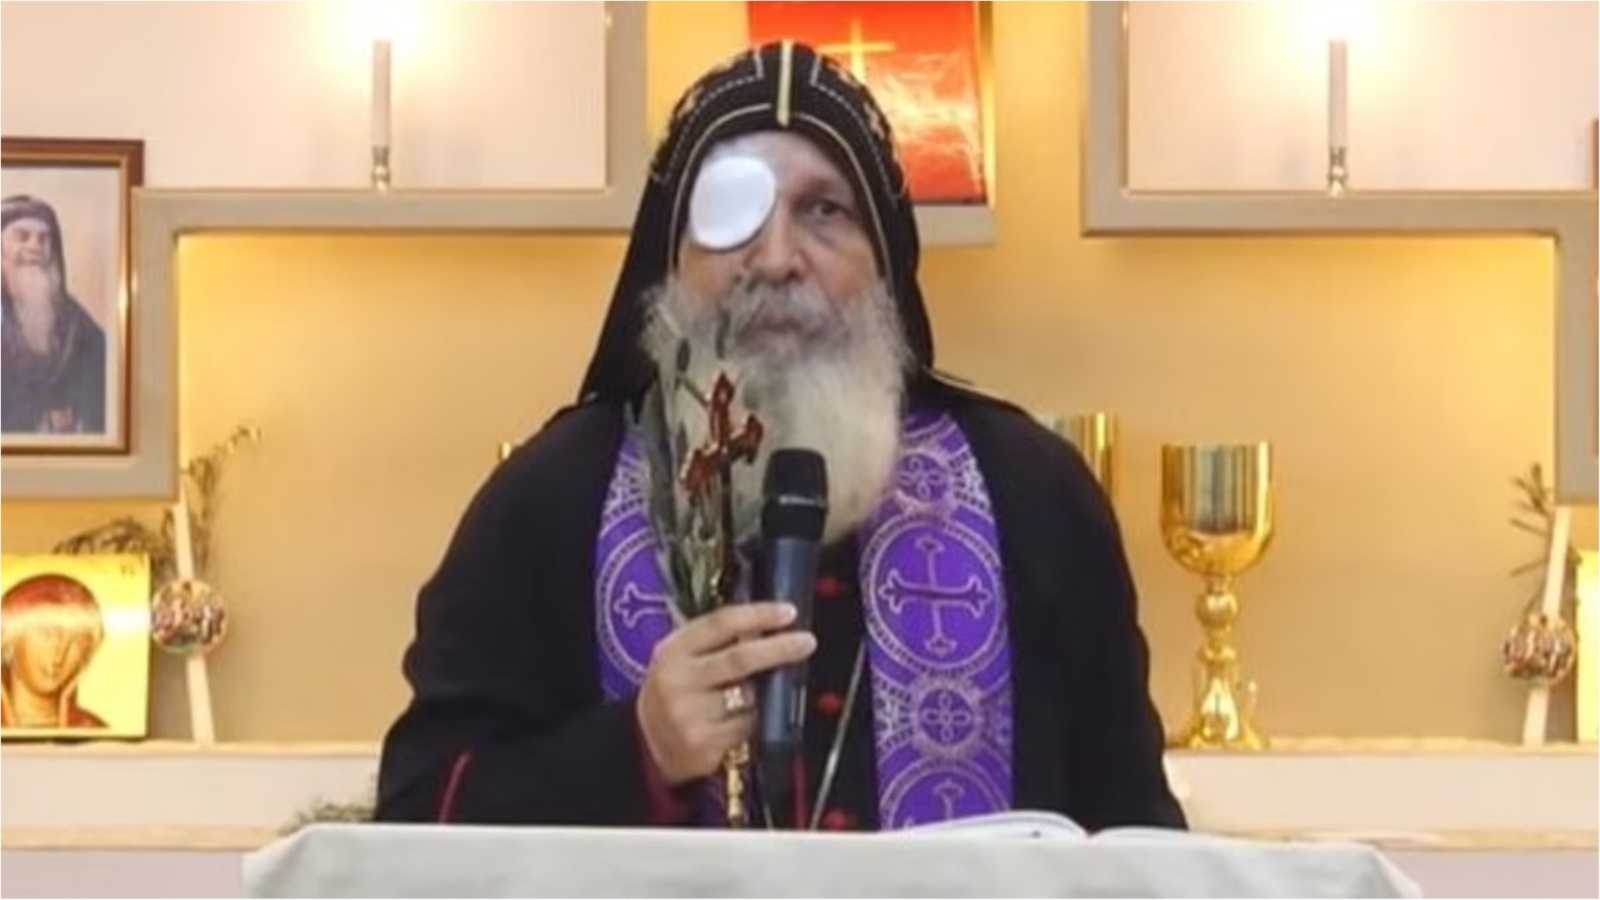 Biskup Mar Mari Emmanuel se kao pobjednik vratio u svoju Crkvu Krista Dobrog pastira